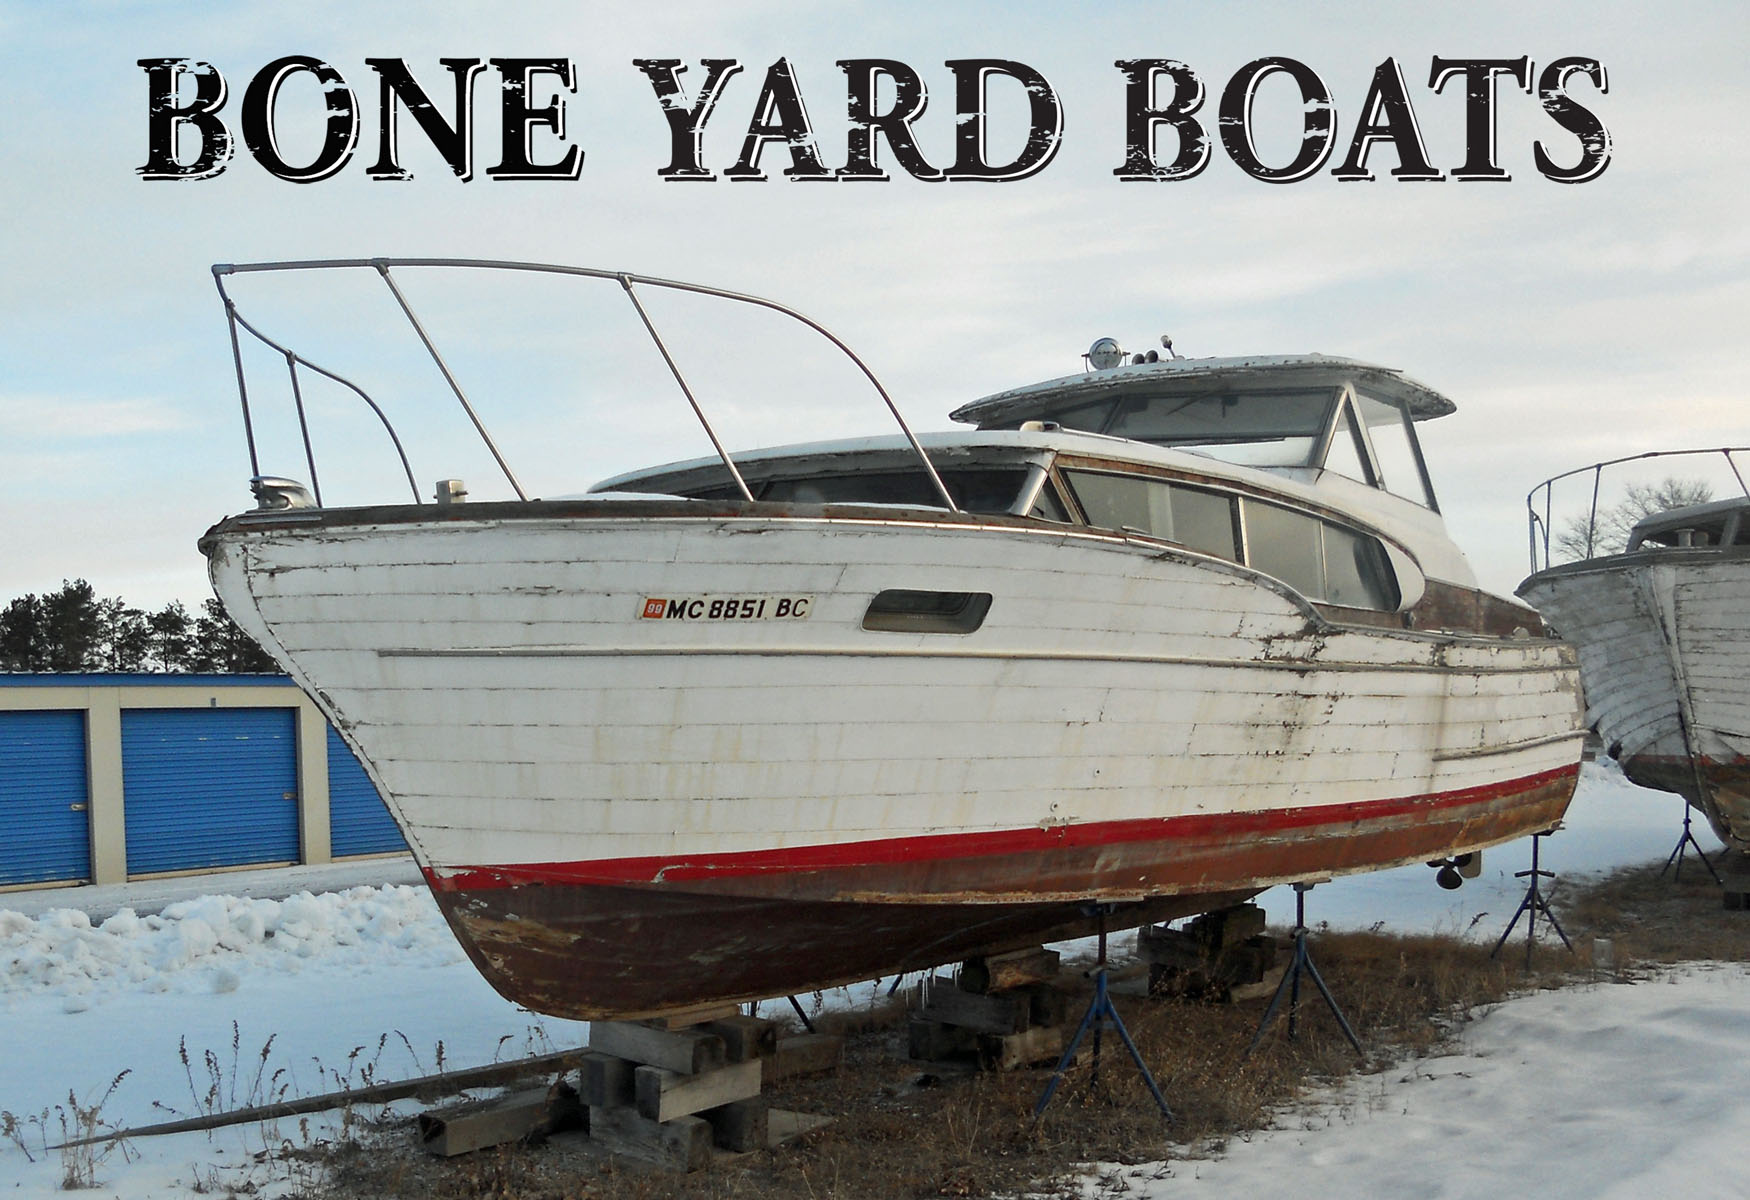 Bone Yard Boats - Saving Old Boats Since 1996